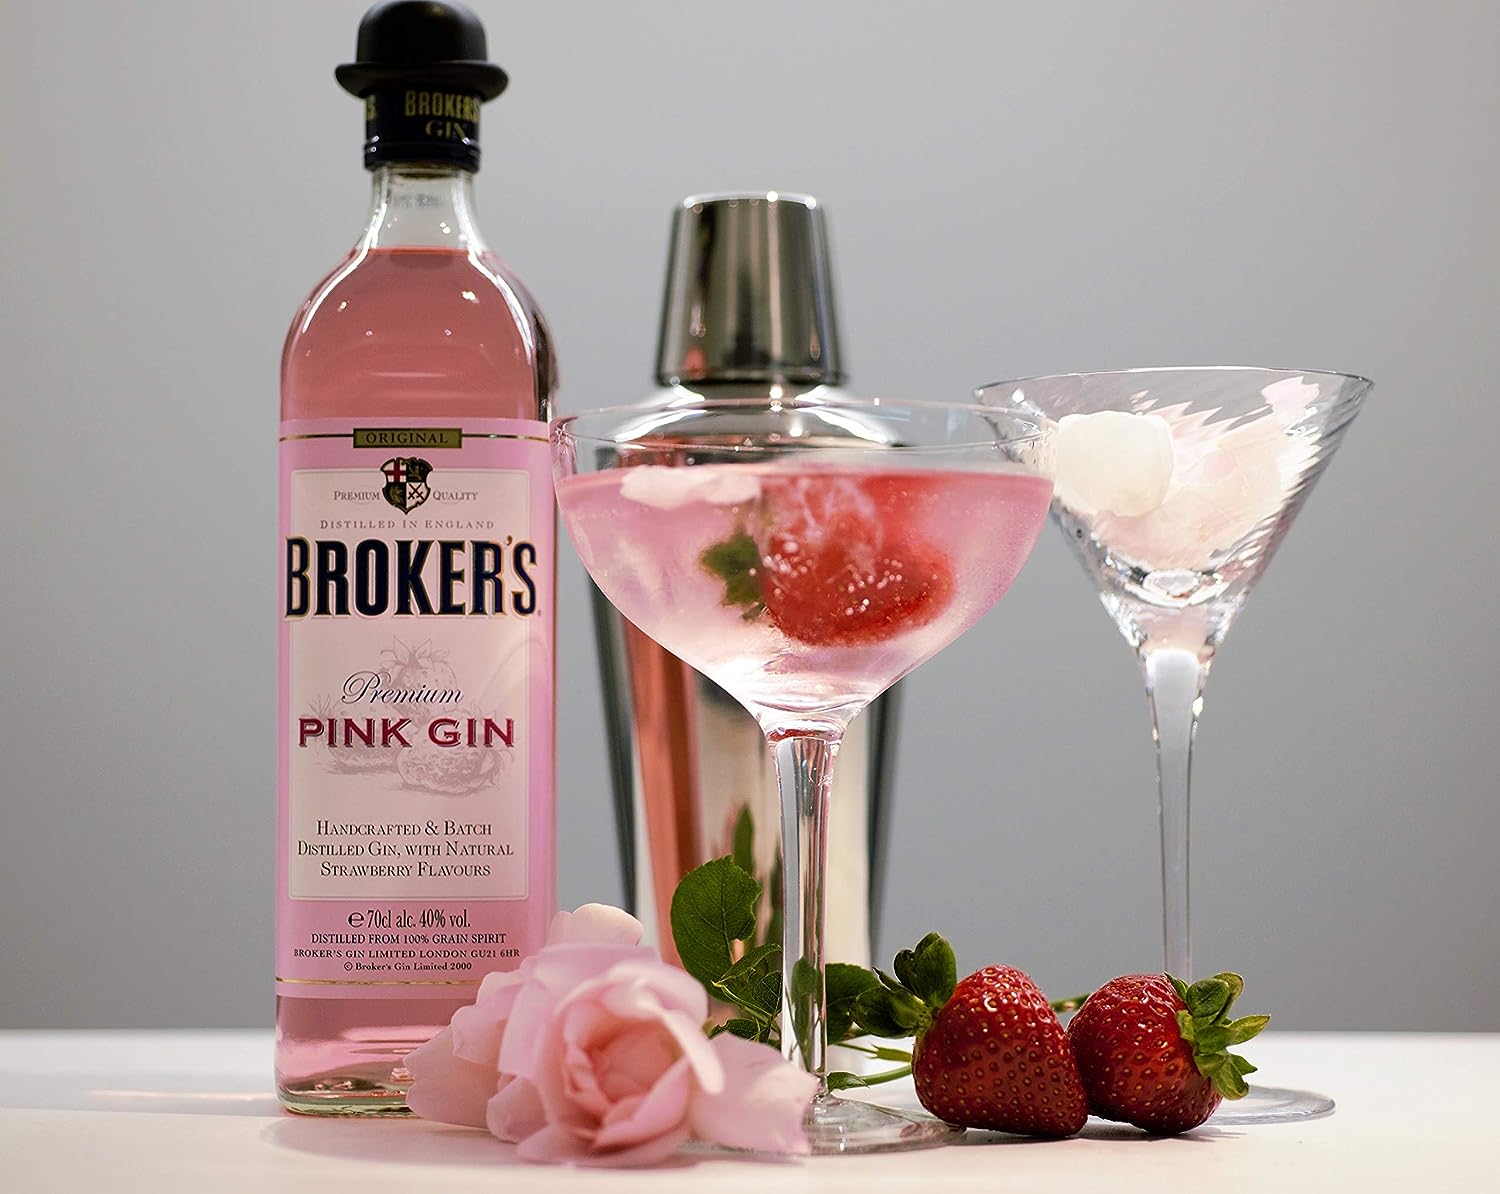 Broker's Pink Gin 700ml (40%) | Whiskypedia